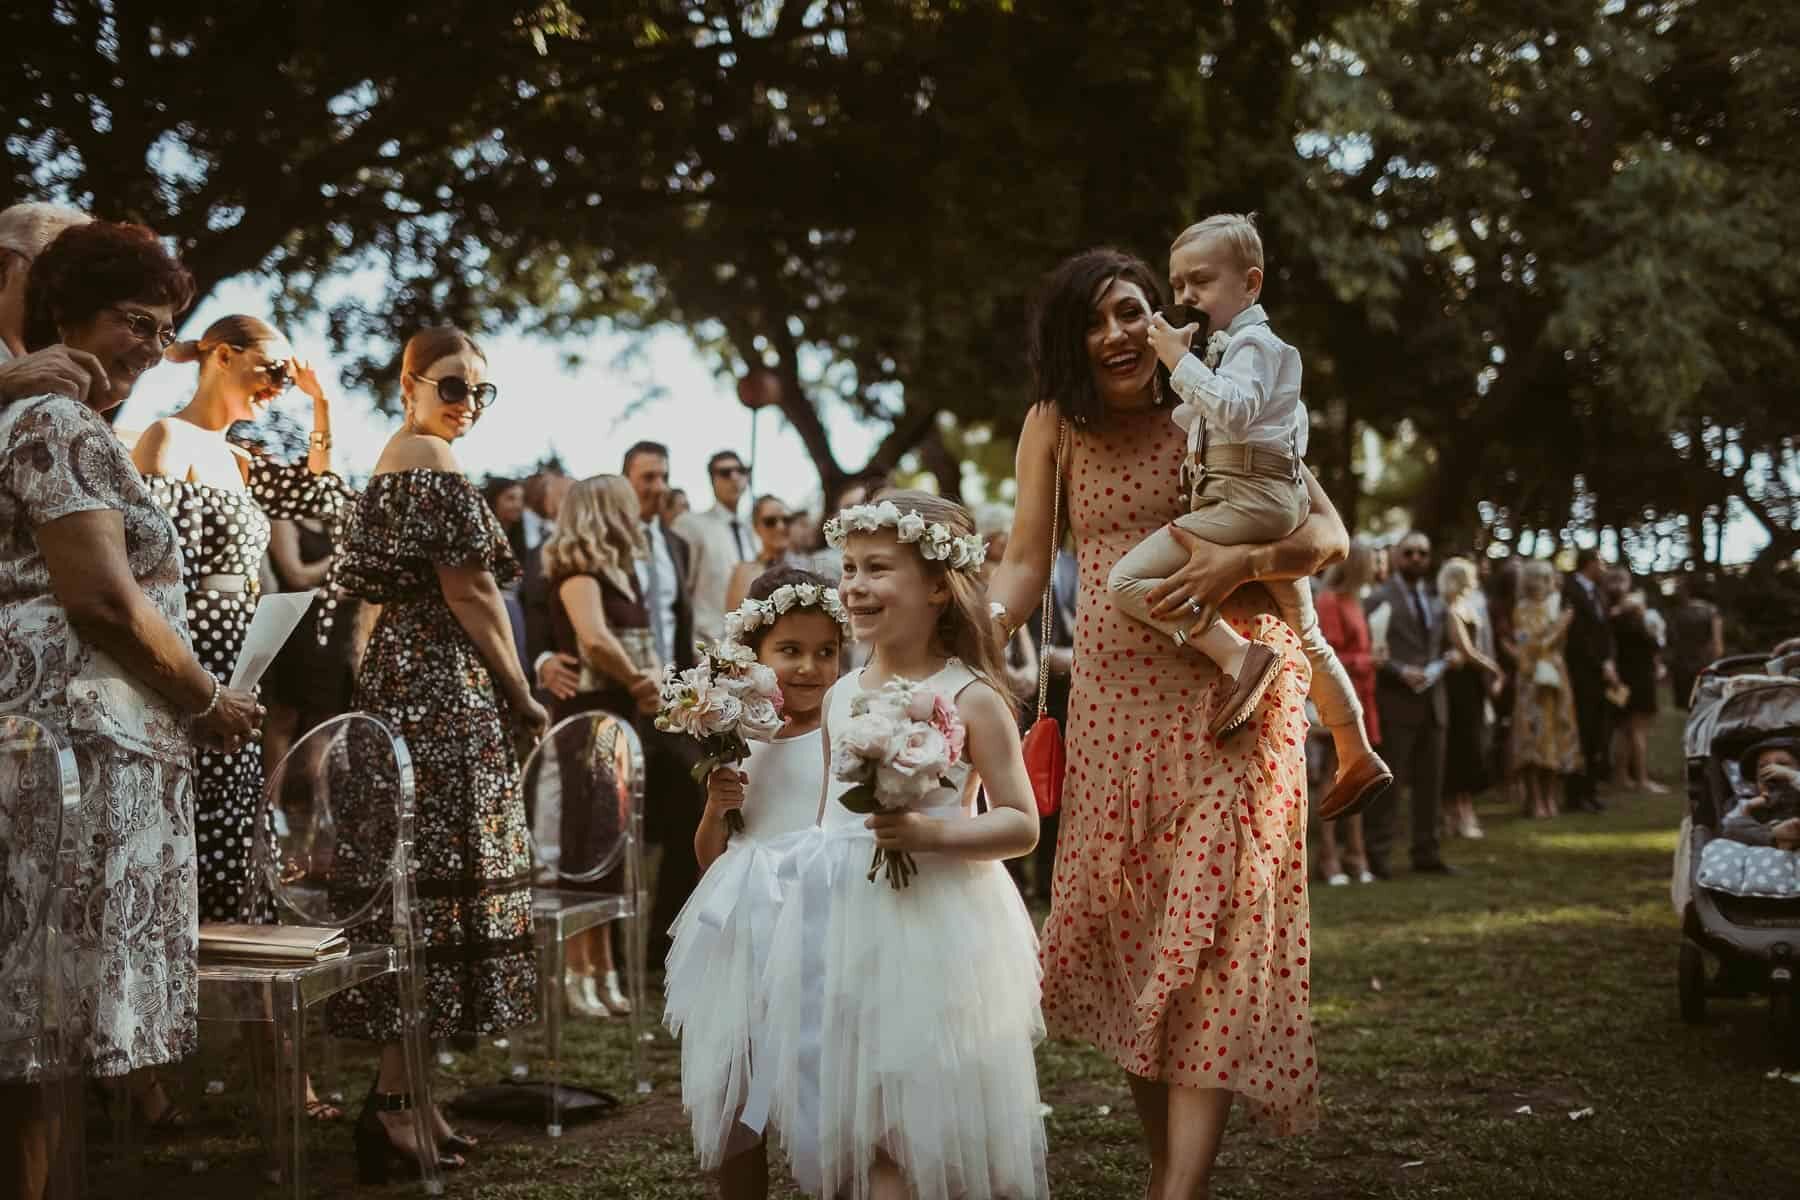 Perth wedding at Harold Boas Gardens